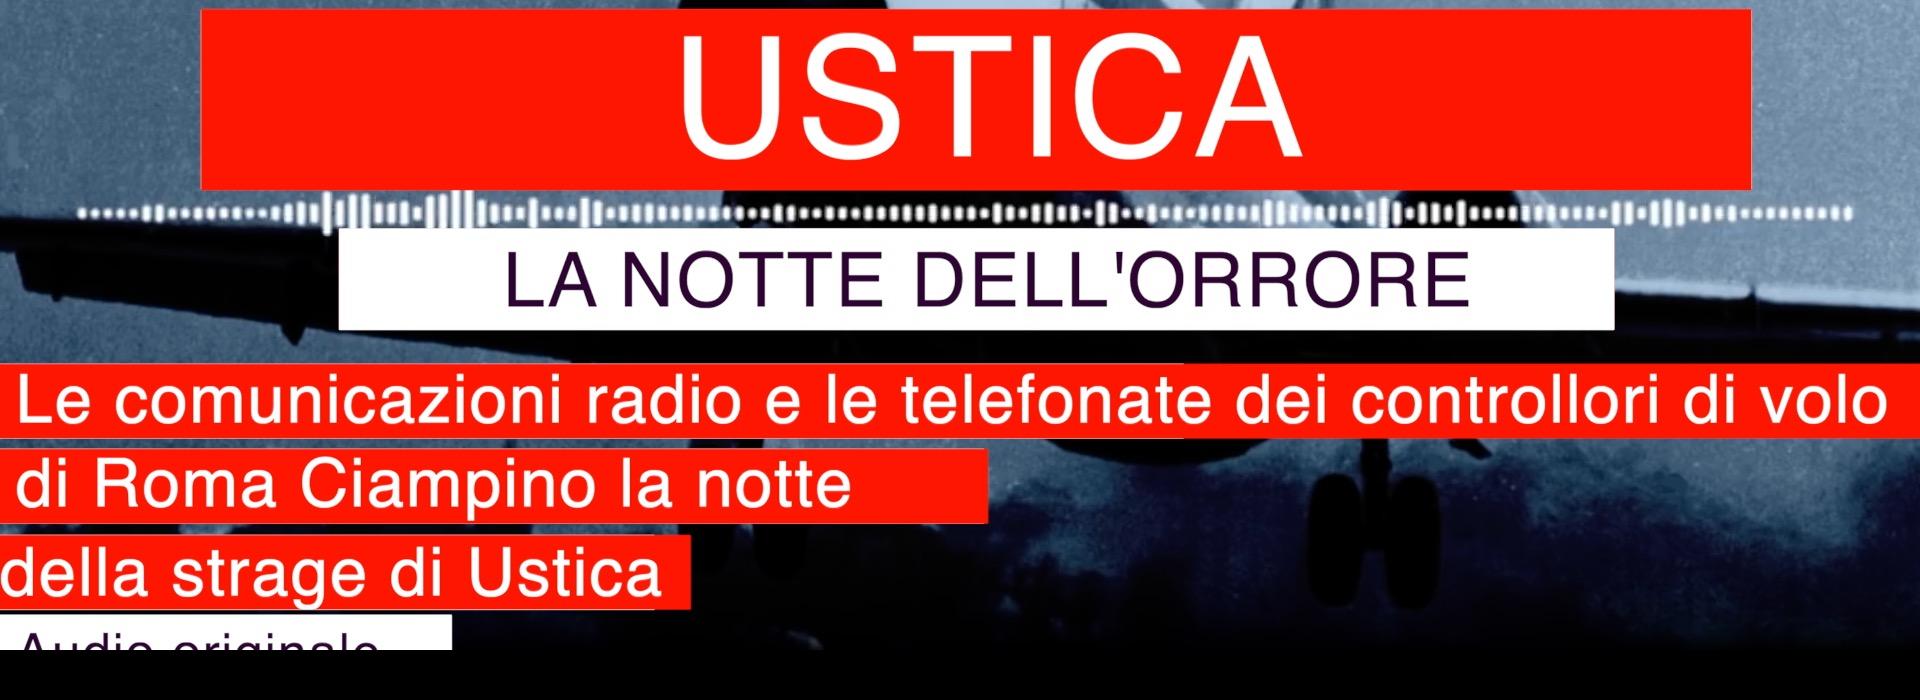 Ustica: la Francia aveva informazioni che non ha dato all'Italia